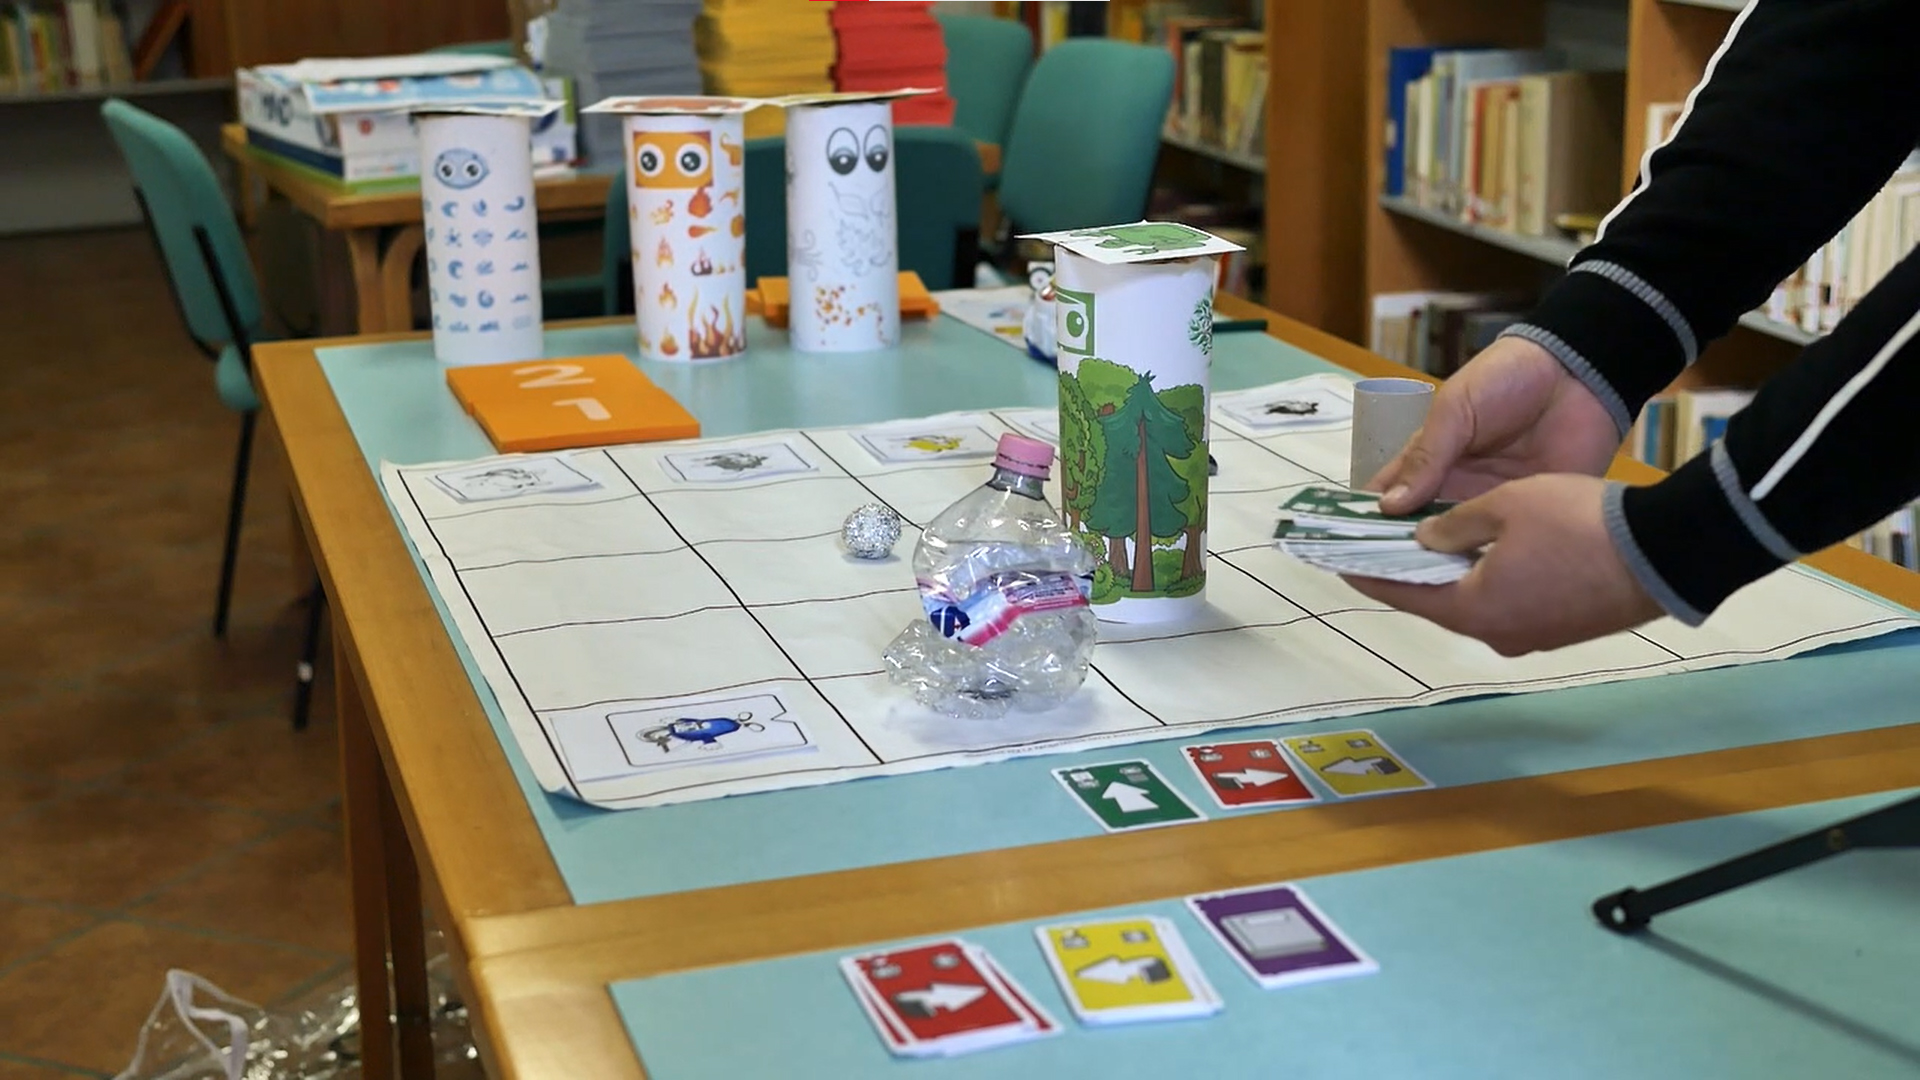 educatori mentre effettuano una partita mediante coding unplugged per insegnare il pensiero computazionale ai bambini in didattica a distanza